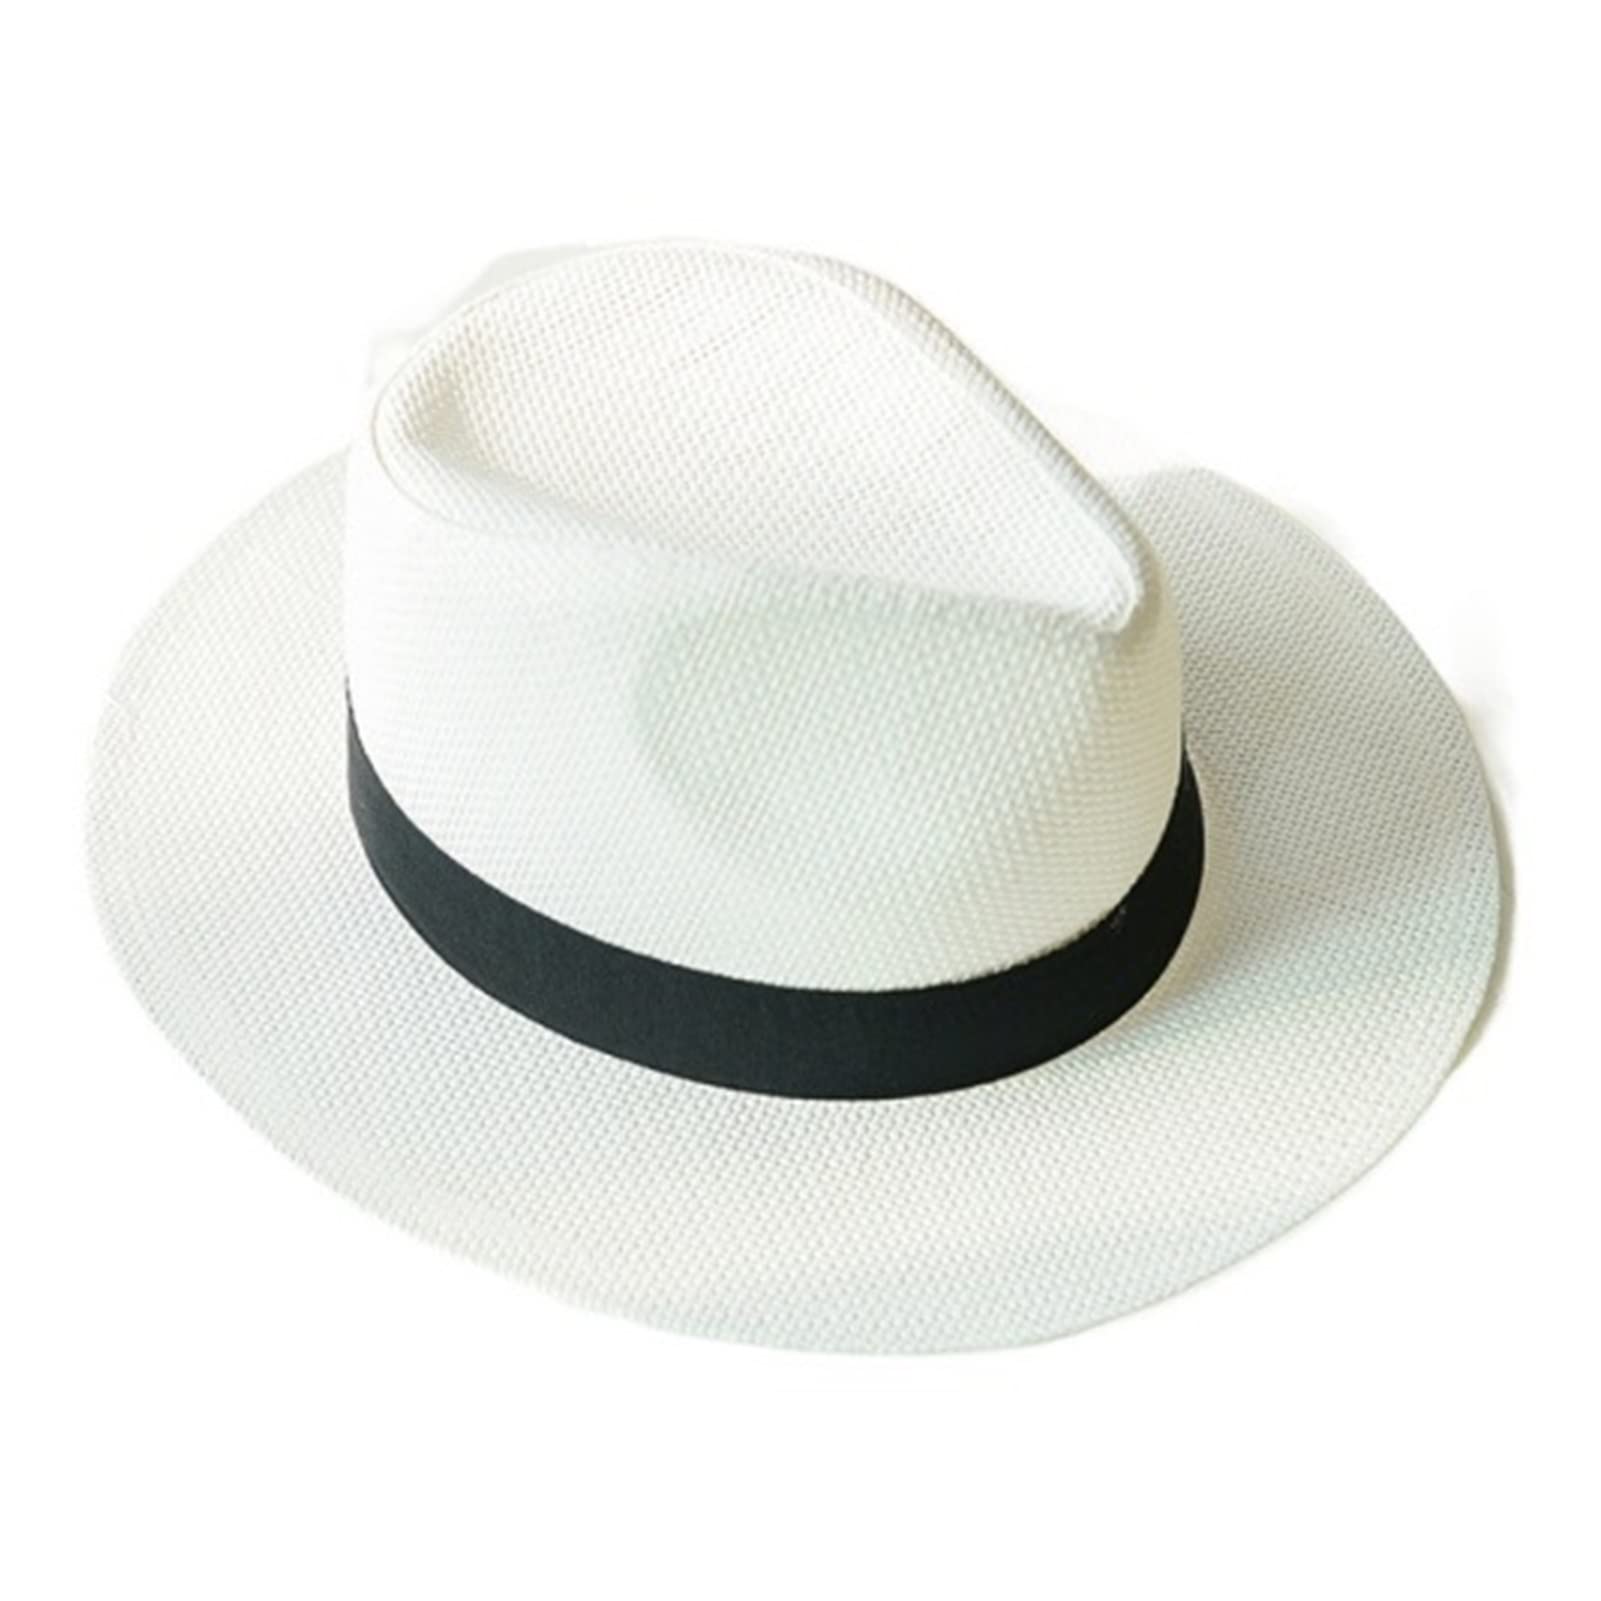 送料無料New Summer Hats for Men Women Straw Panama Hats Solid Plain Wide Brim Beach Hats with Band Unisex Fedora Sun Hat